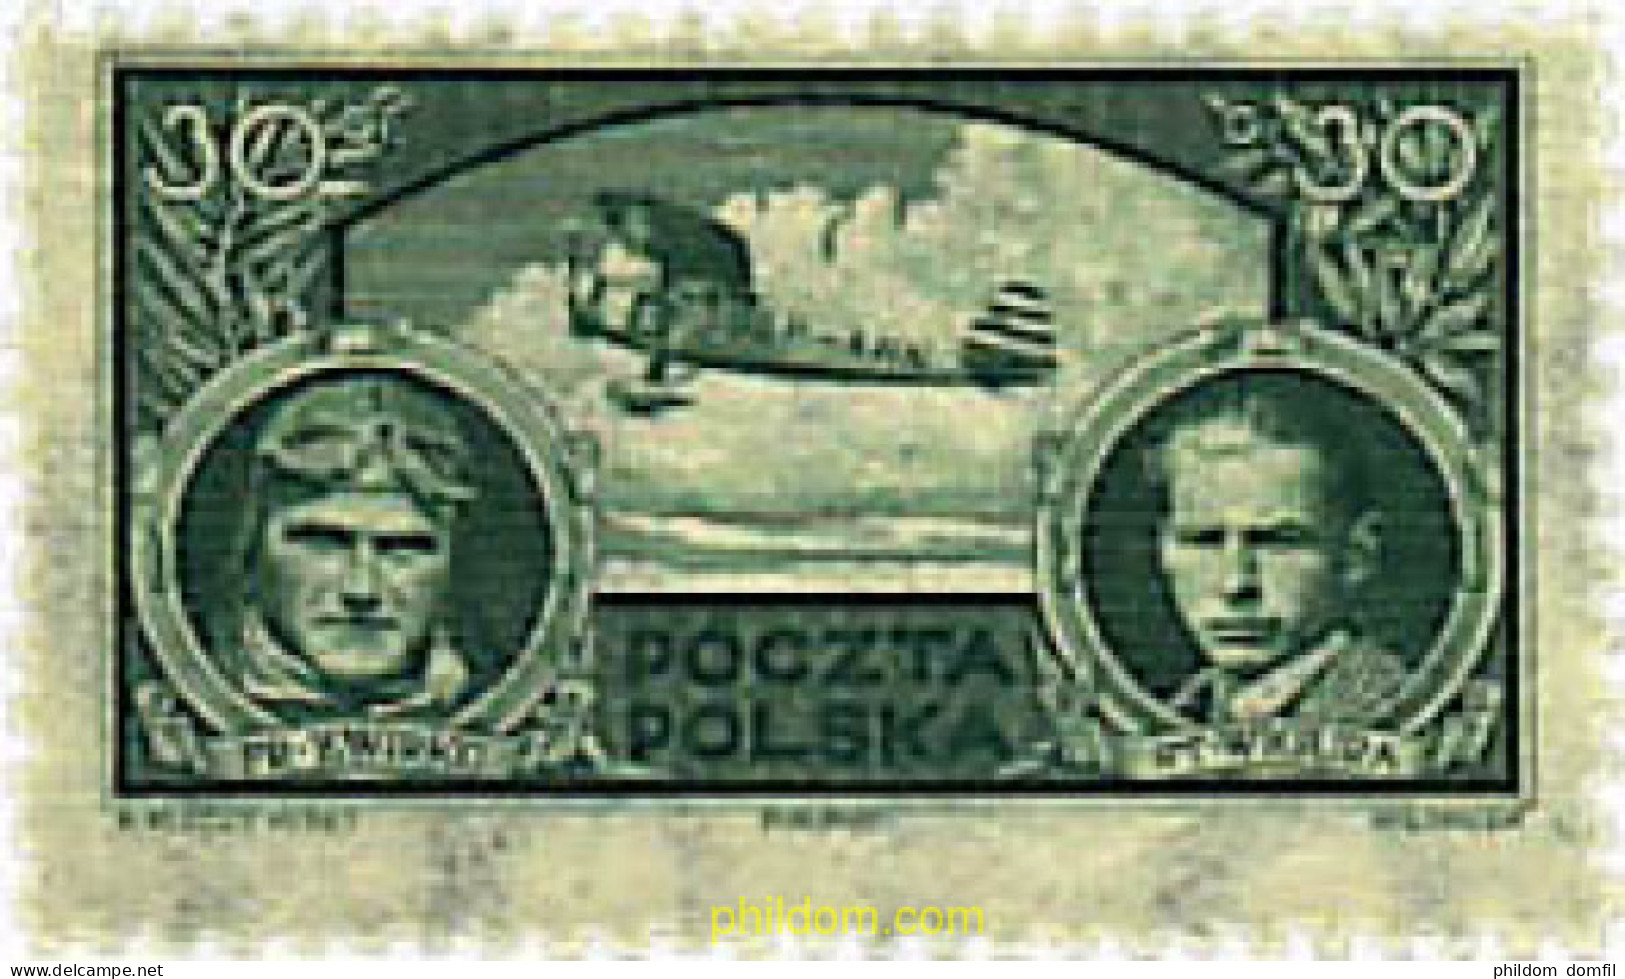 352714 HINGED POLONIA 1933 VICTORIA POLACA EN LA COPA DE EUROPA DE AVIACION TURISTICA - Neufs